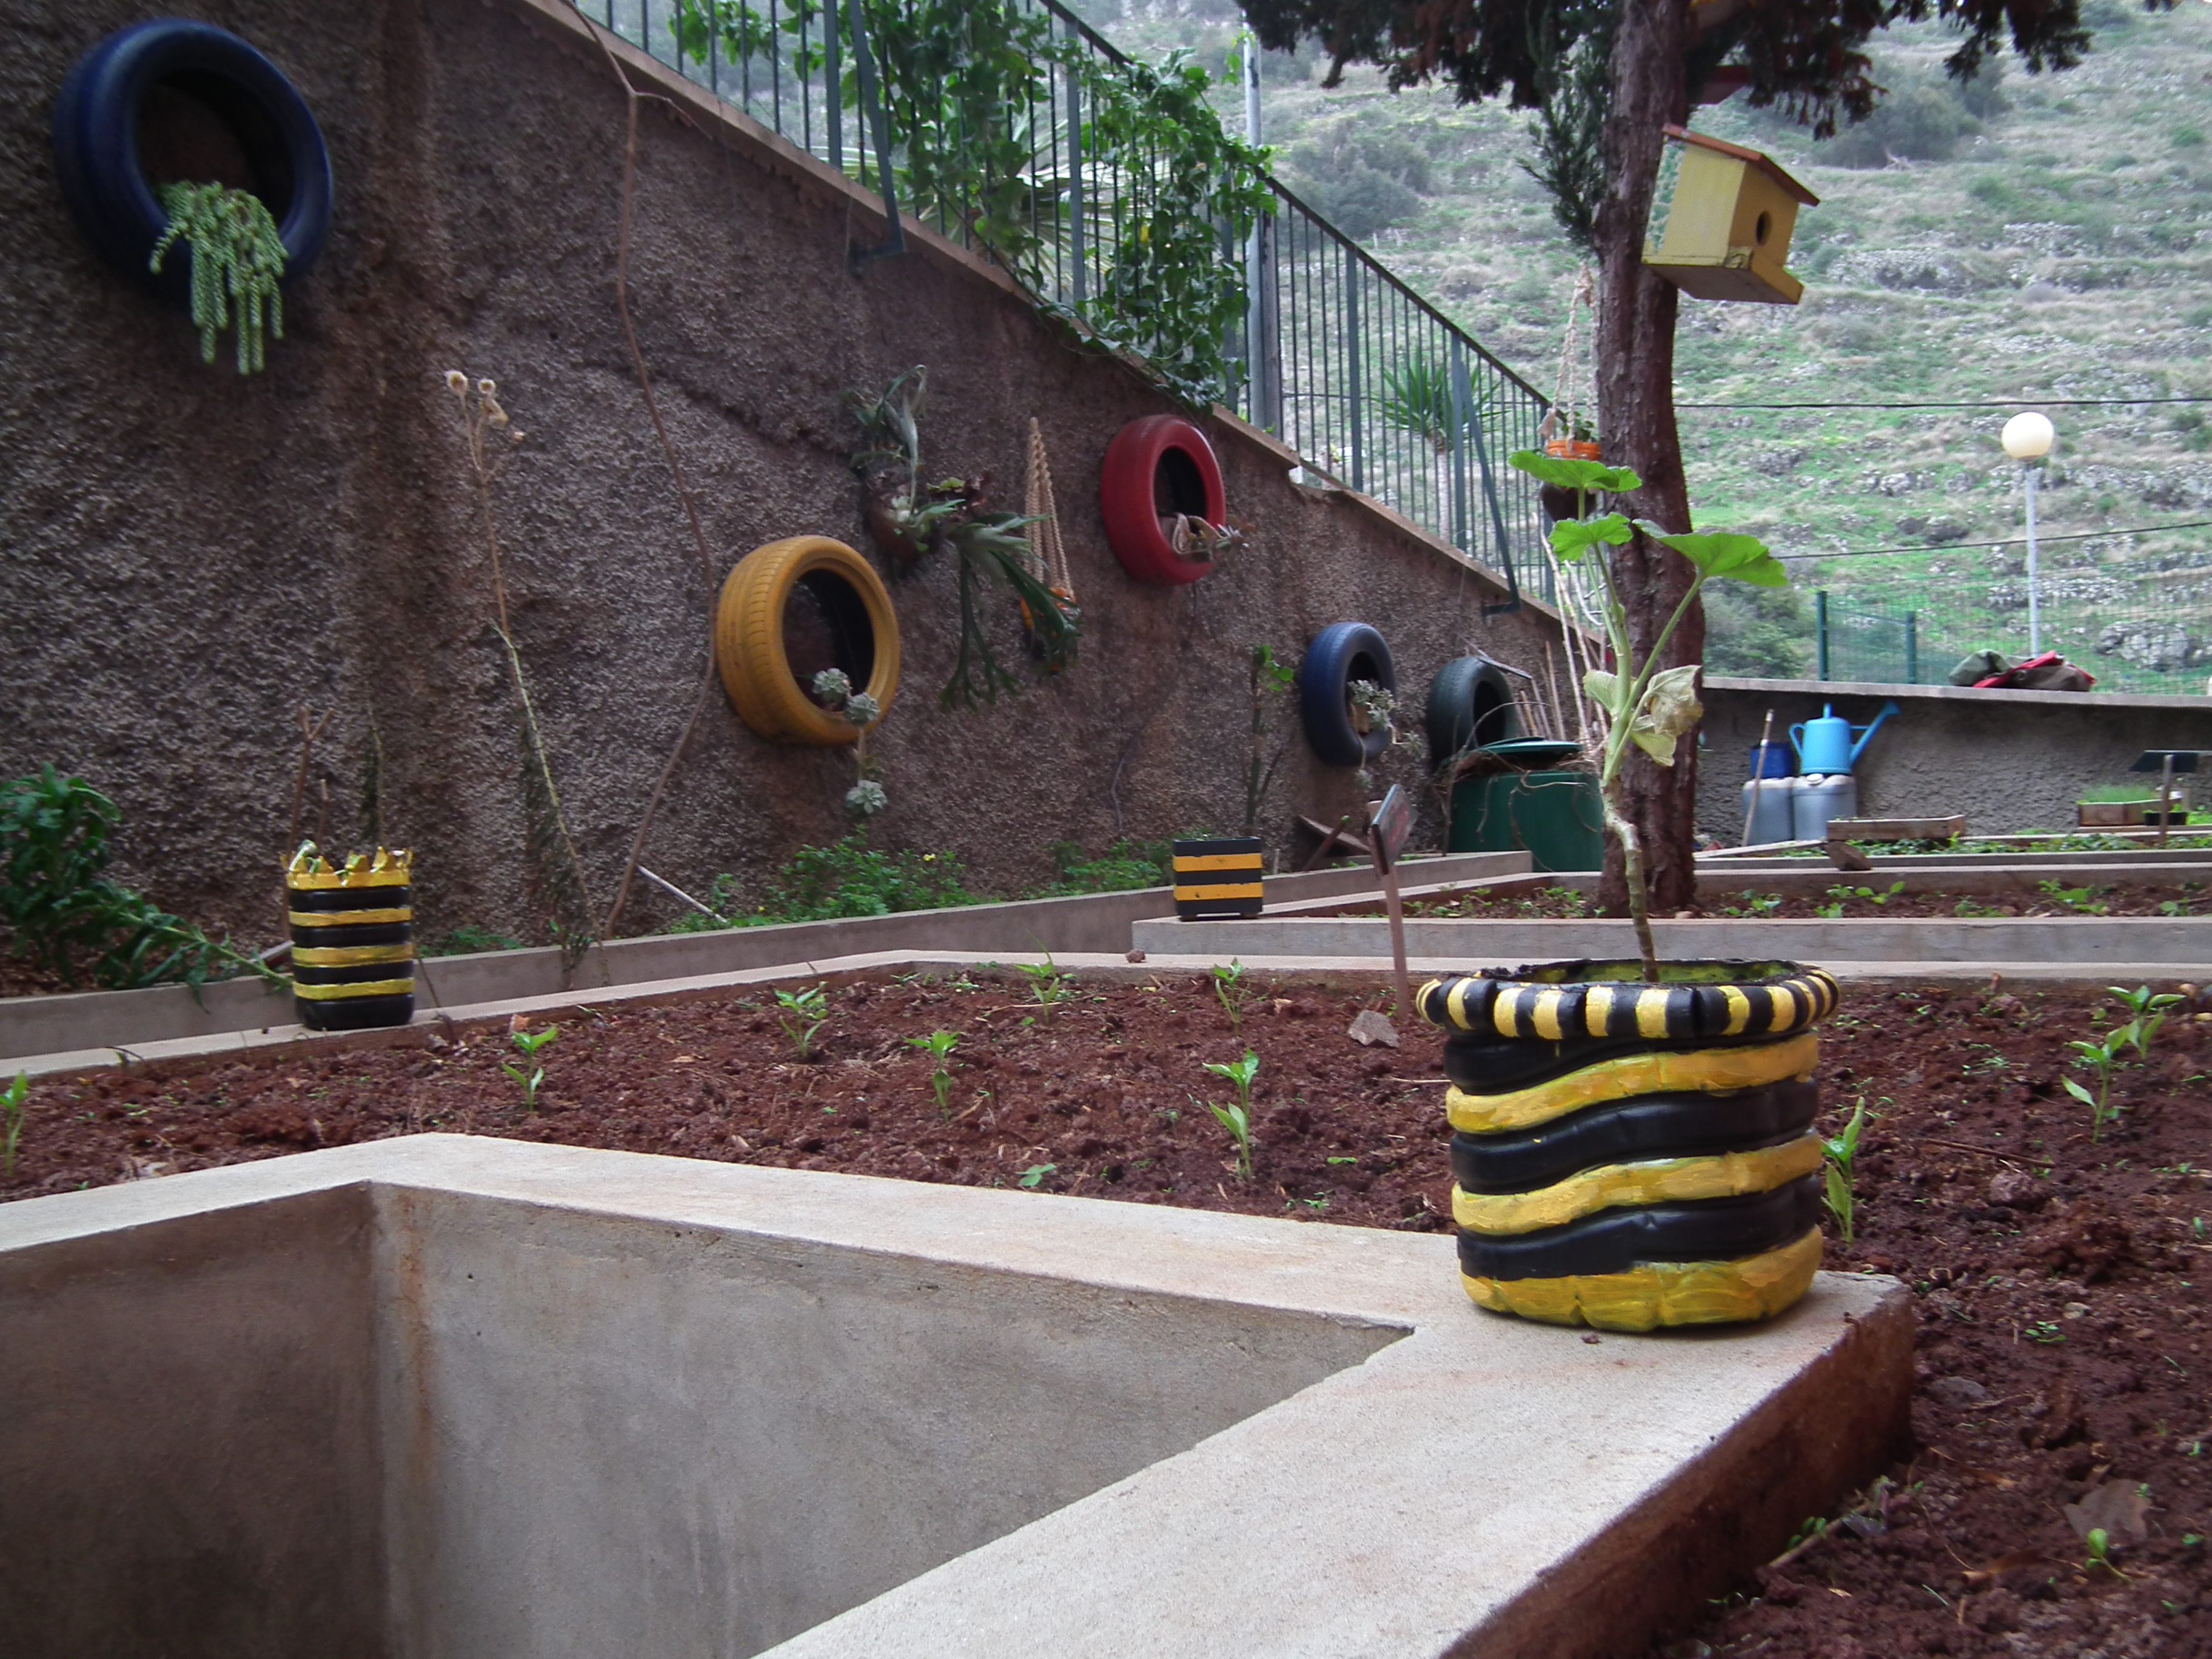 Visualização do canteiro dos pimenteiros e decoração da horta bio, com vasos elaborados pelos alunos, com materiais reutilizáveis, no âmbito do projeto interdisciplinar “A importância das abelhas para o desenvolvimento sustentável”